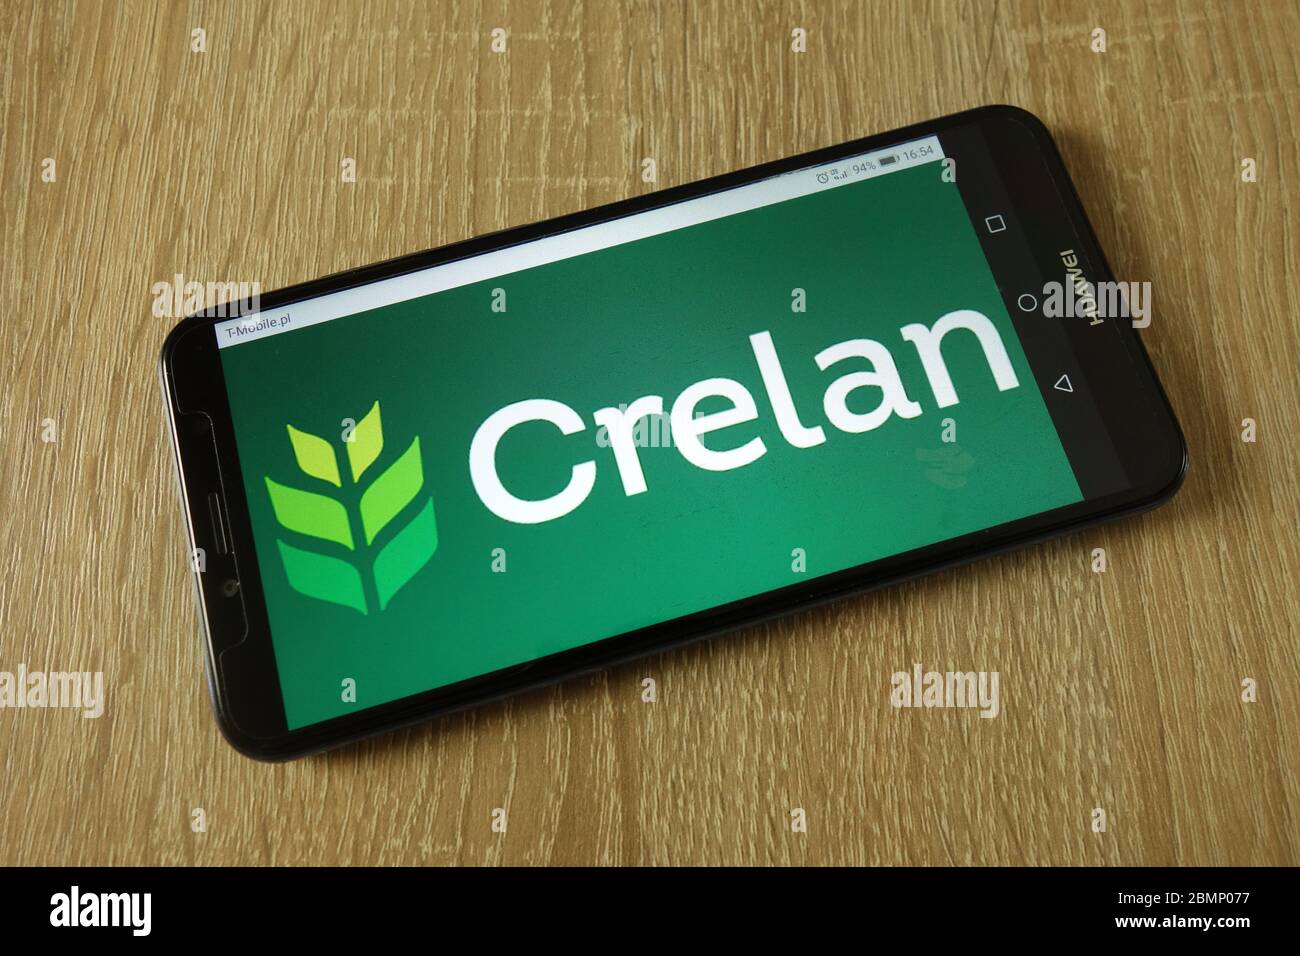 Crelan bank logo displayed on smartphone Stock Photo